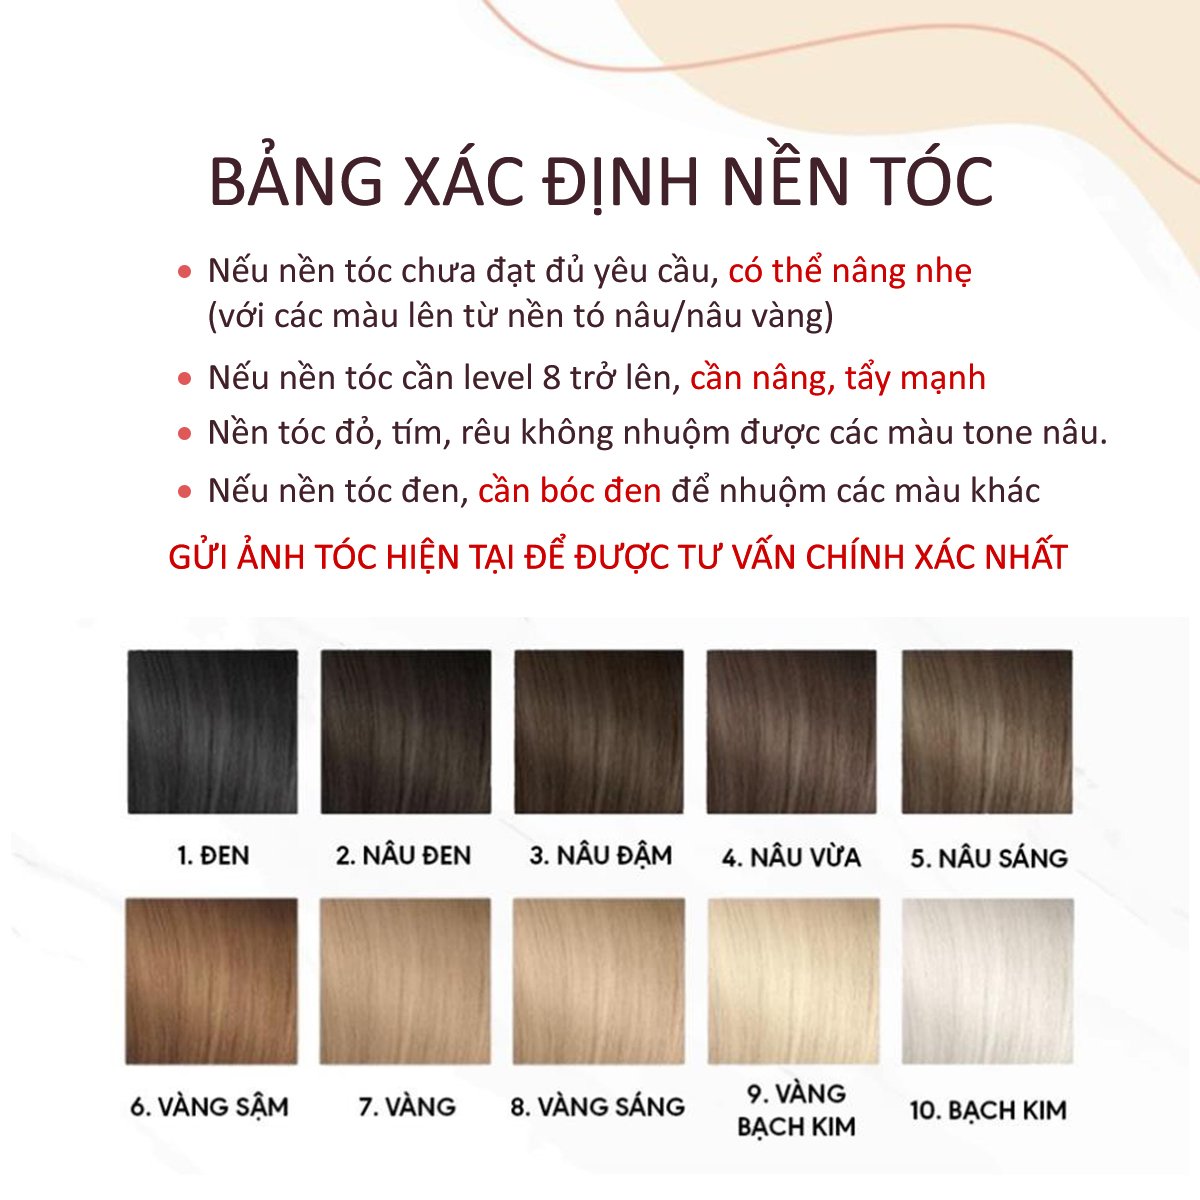 Bảng màu màu tím sữa cho tóc người Việt